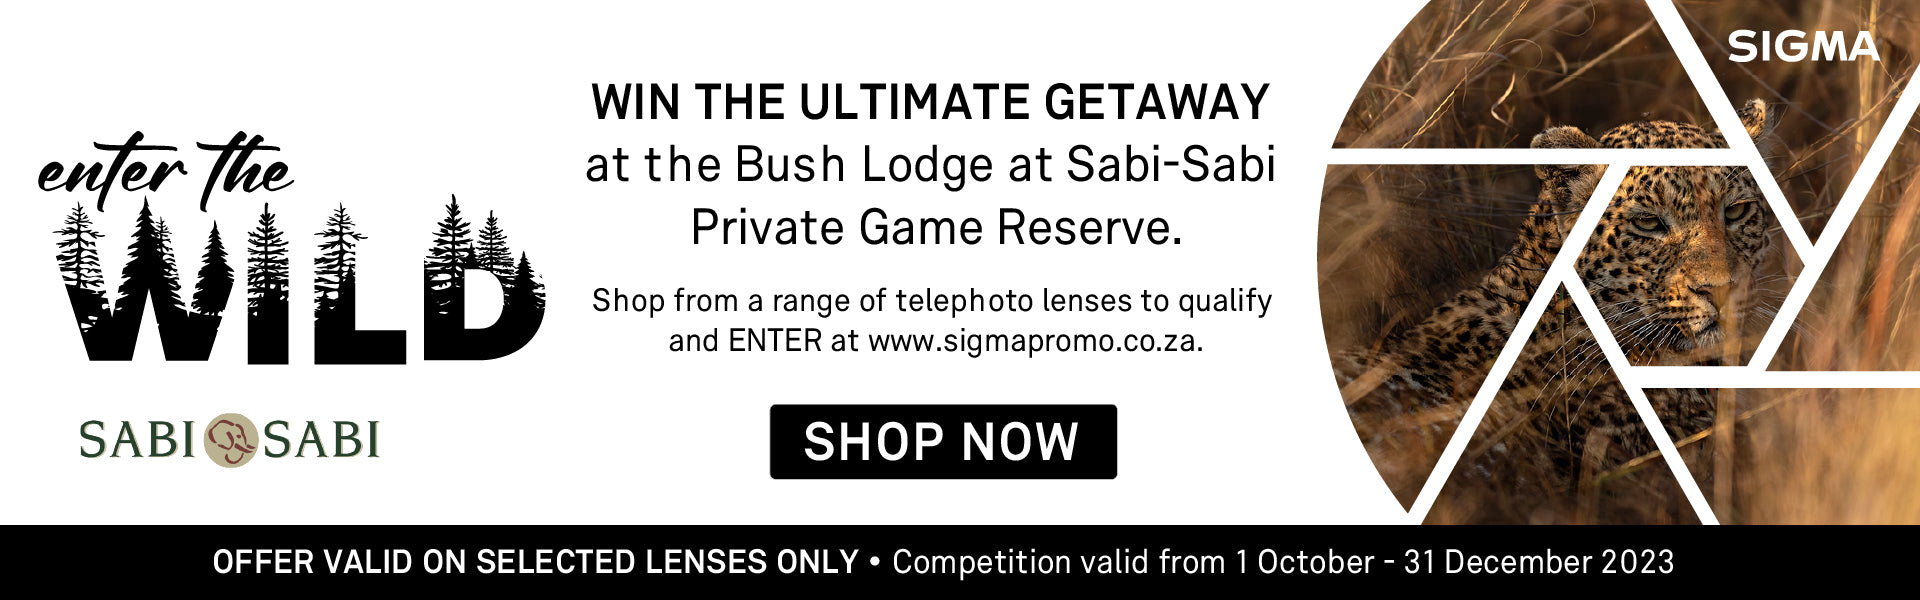 Win a Getaway to Sabi Sabi with Sigma - 2023